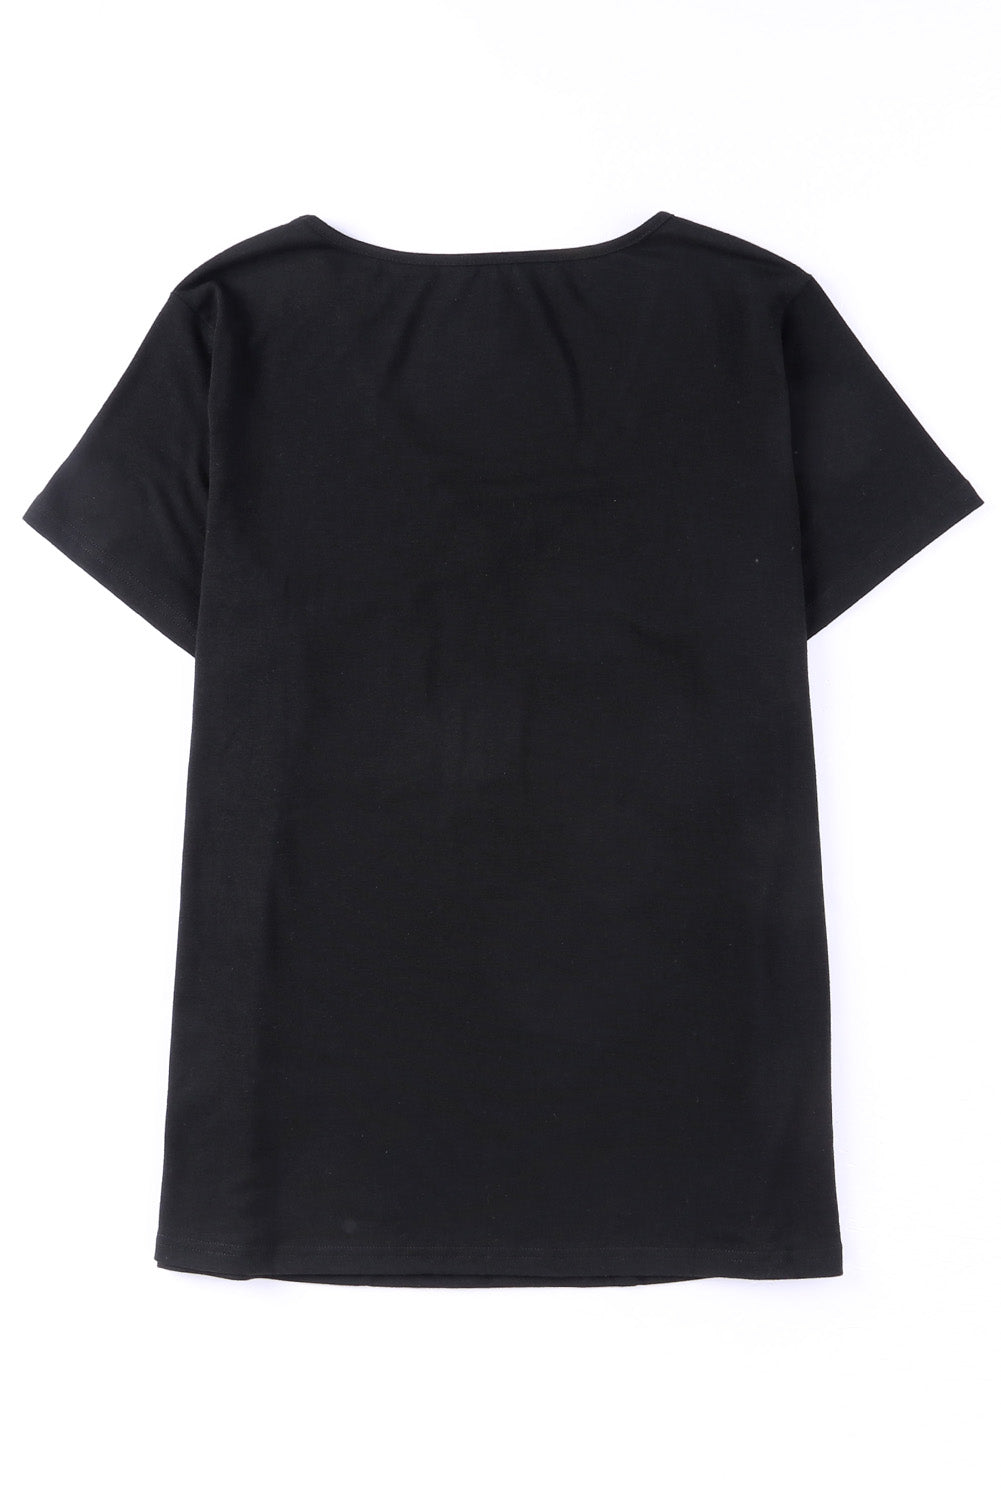 T-shirt noir à bordure en sequins, col en V, poche poitrine, grande taille